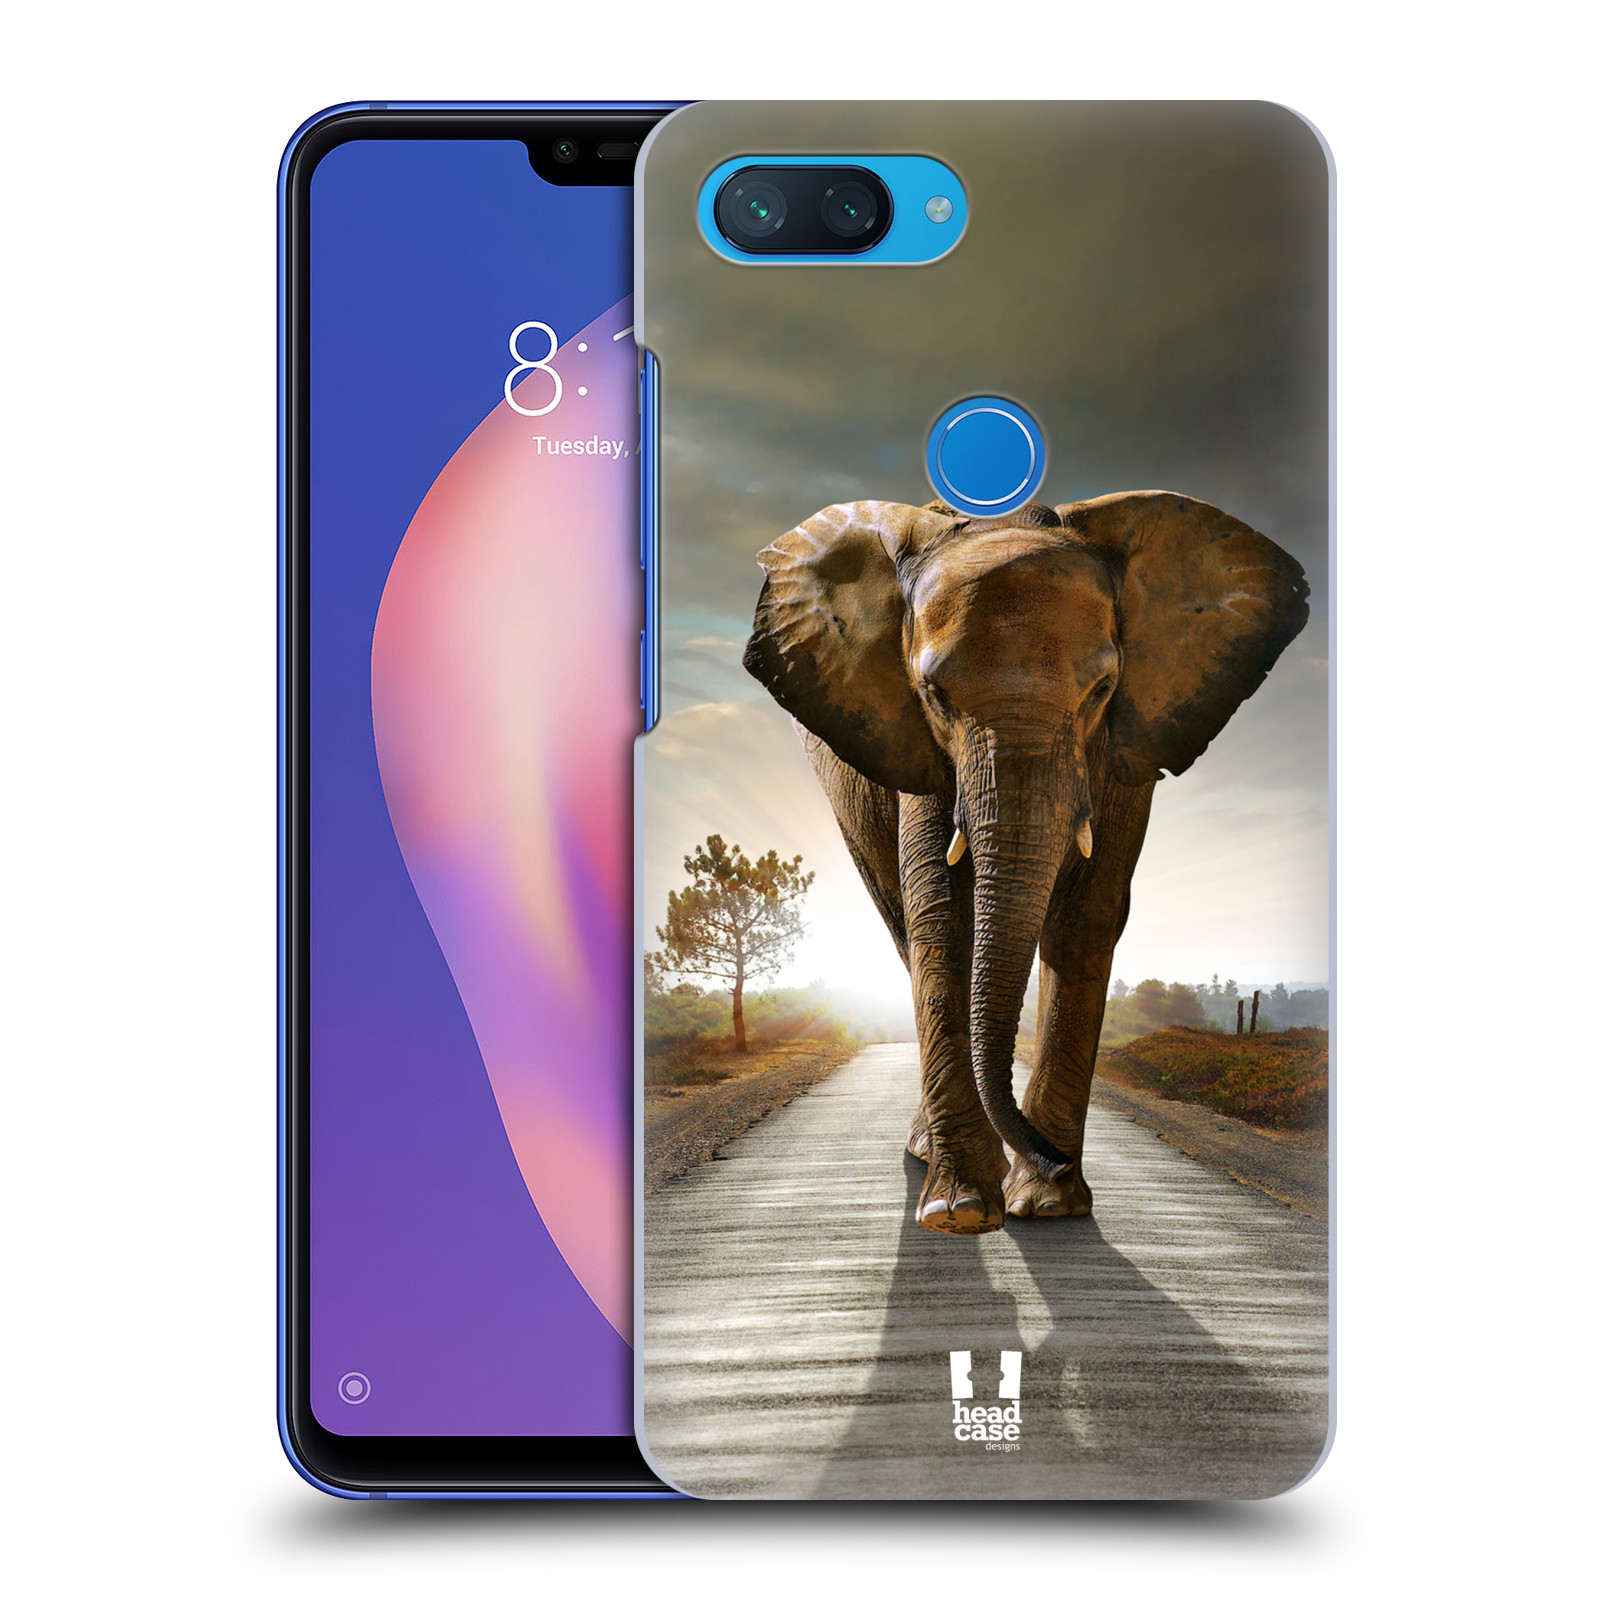 Zadní obal pro mobil Xiaomi Mi 8 LITE - HEAD CASE - Svět zvířat kráčející slon